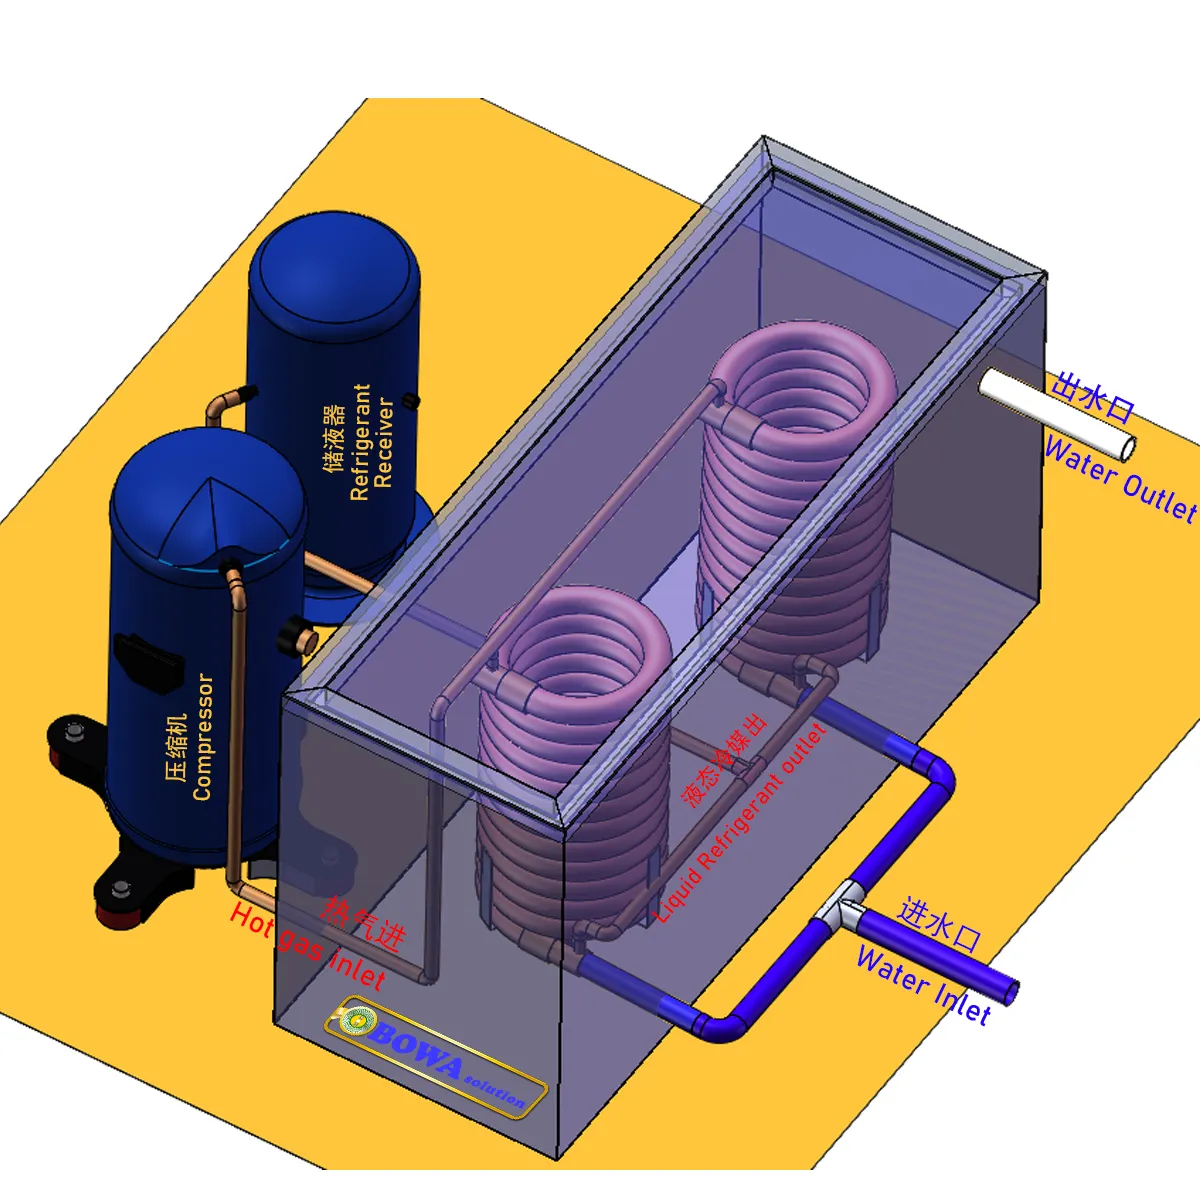 ยูนิเวอร์แซคู่หลอดคอนเดนเซอร์ของ4HP น้ำชิลเลอร์และ10HP ความร้อนปั๊มเครื่องทำน้ำอุ่นสามารถทำงานที่มีคุณภาพที่แตกต่างกันน้ำ